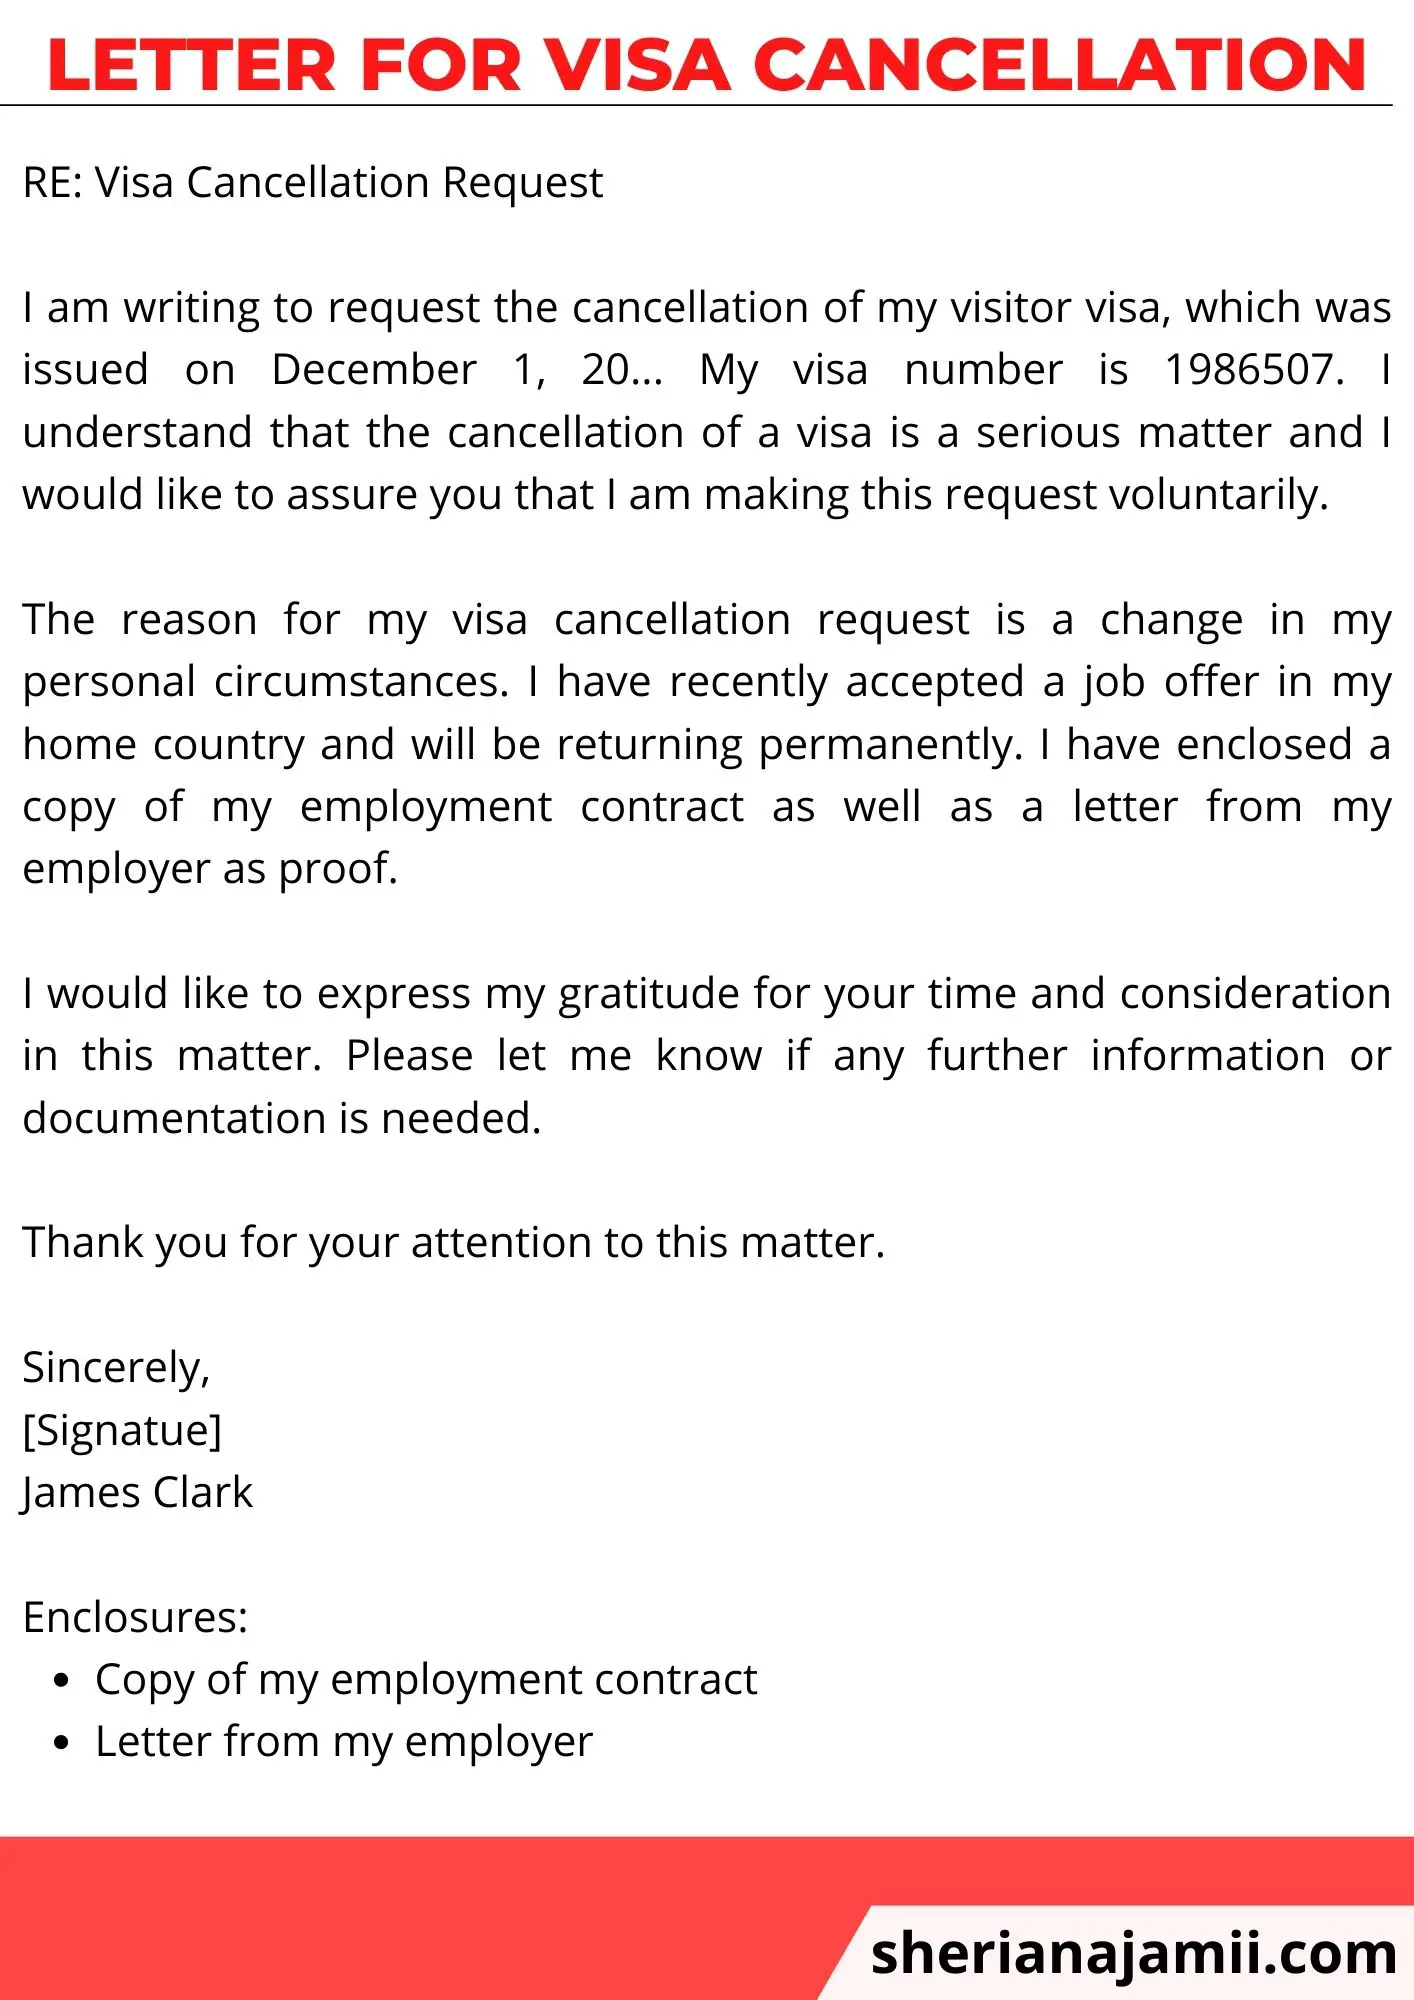 Letter for visa cancellation, Letter for visa cancellation sample, visa cancellation letter